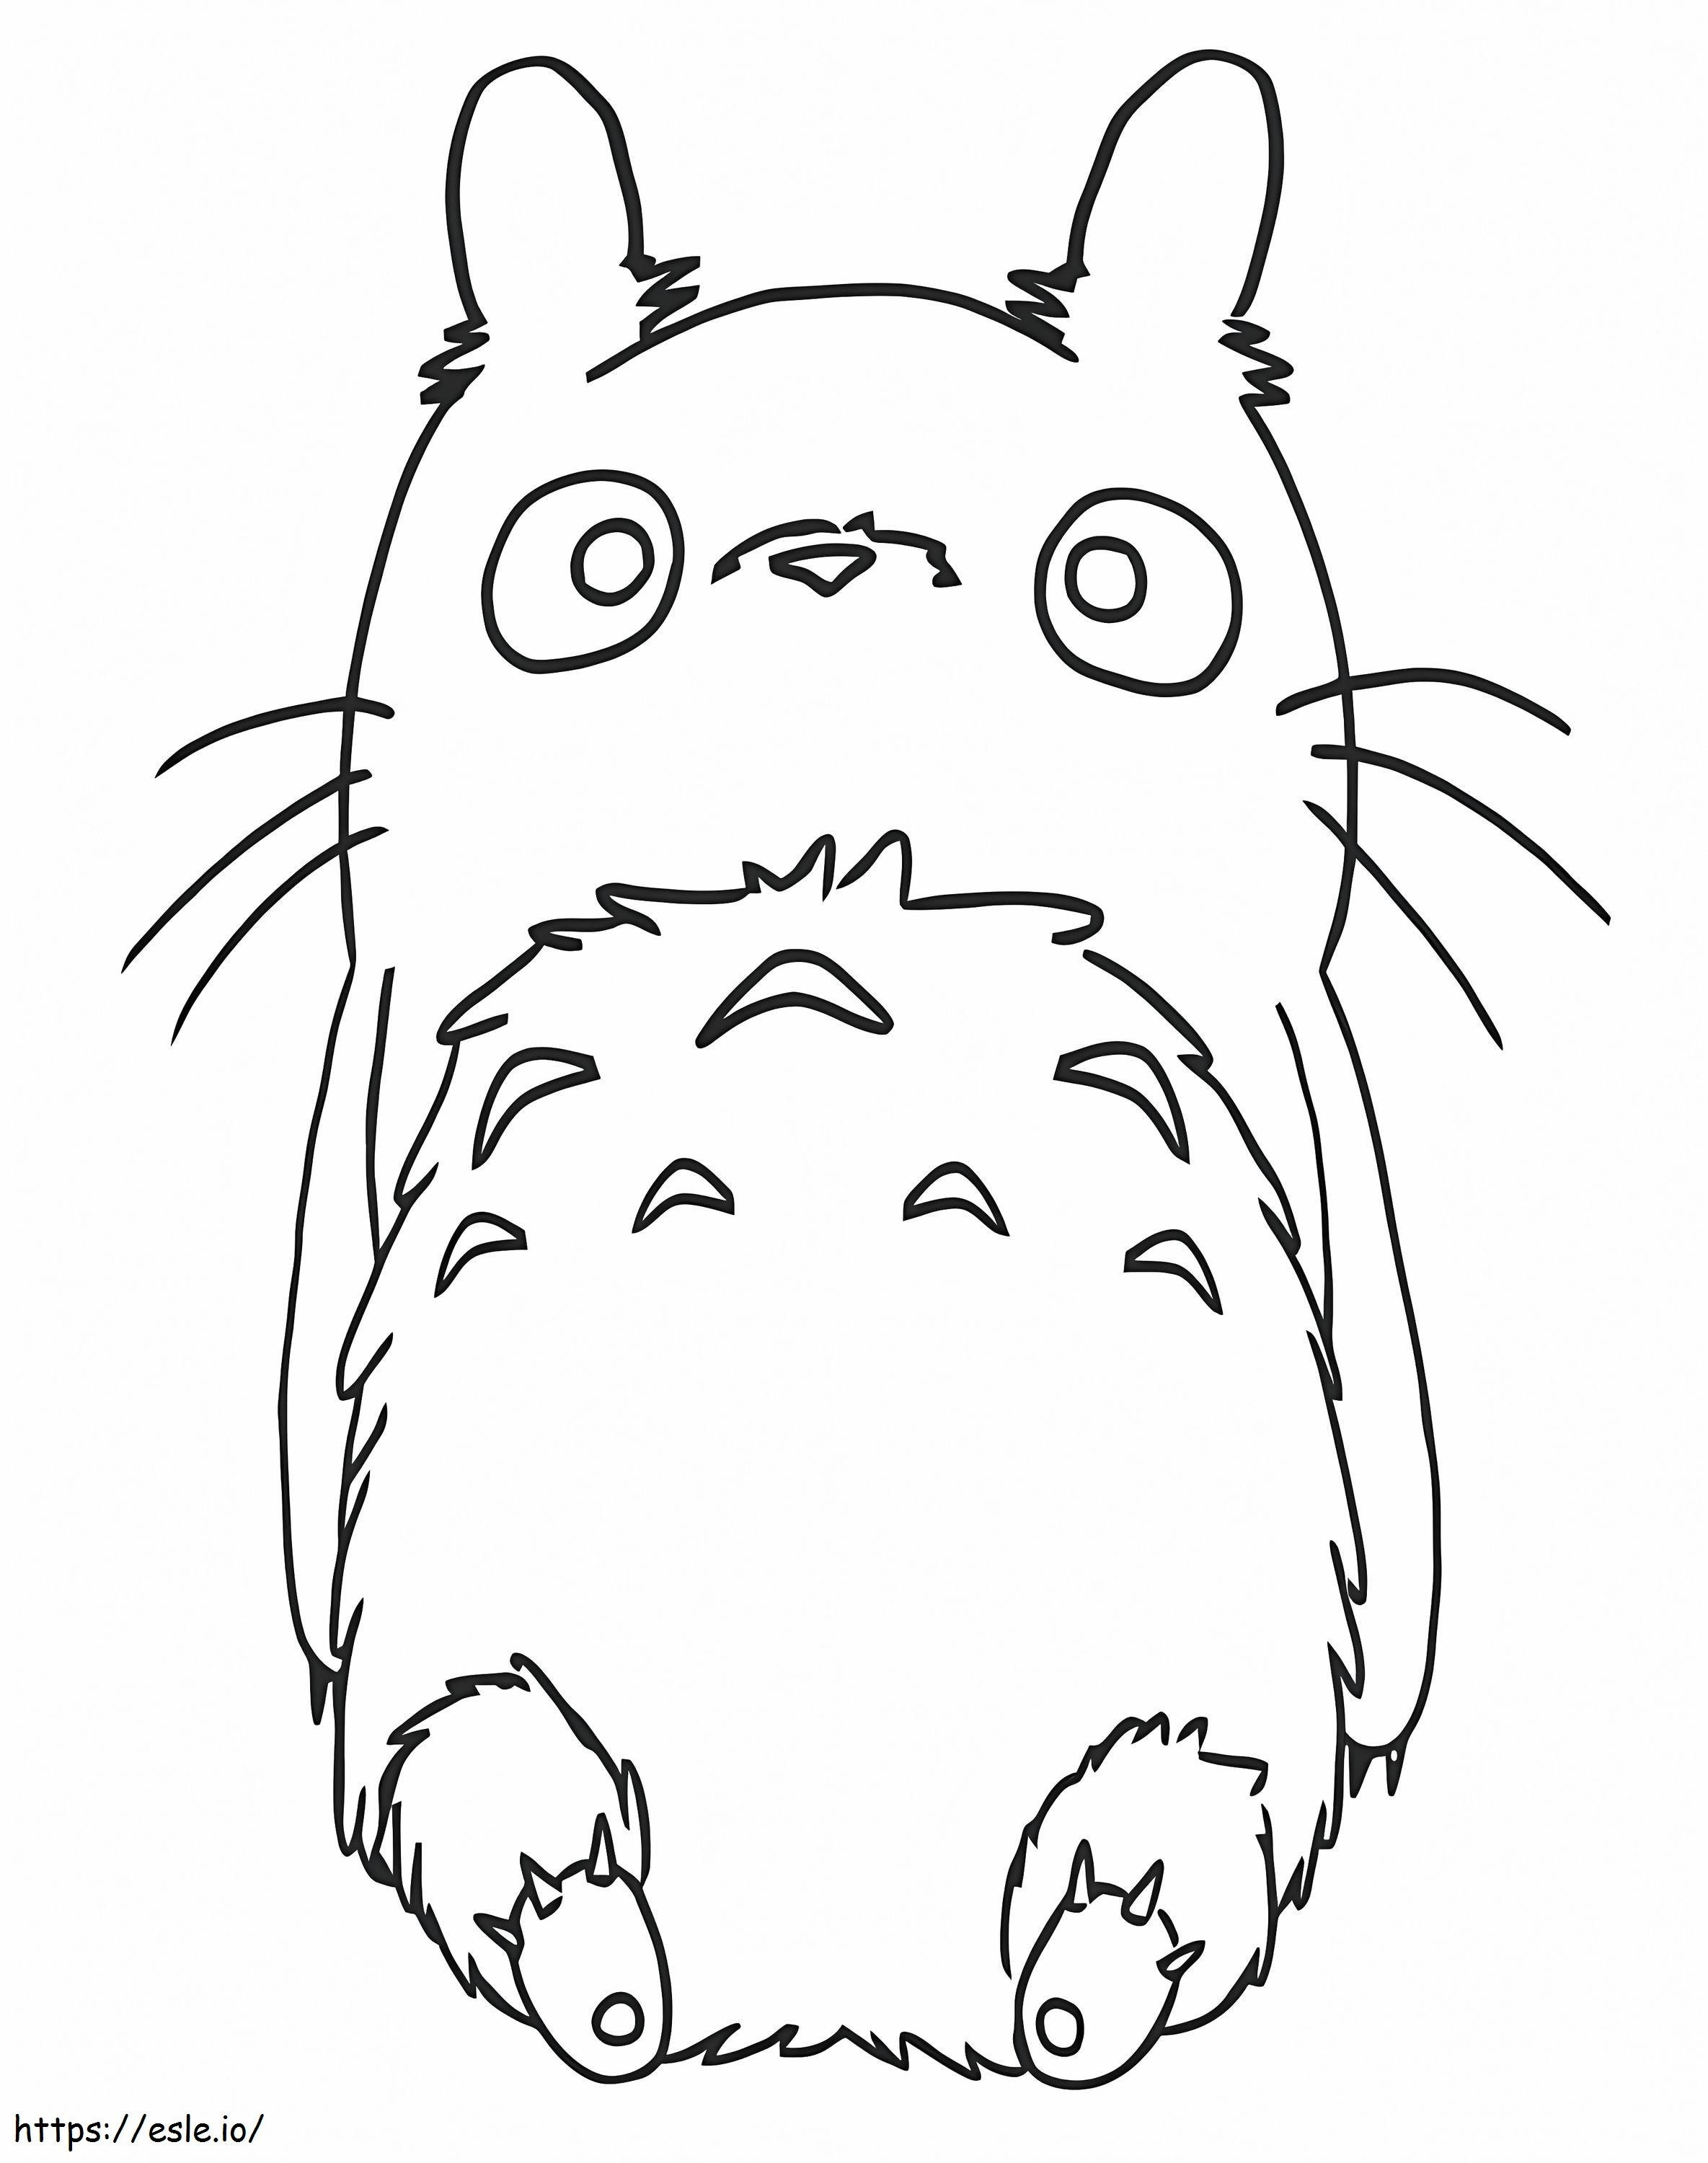 Il simpatico Totoro 1 da colorare